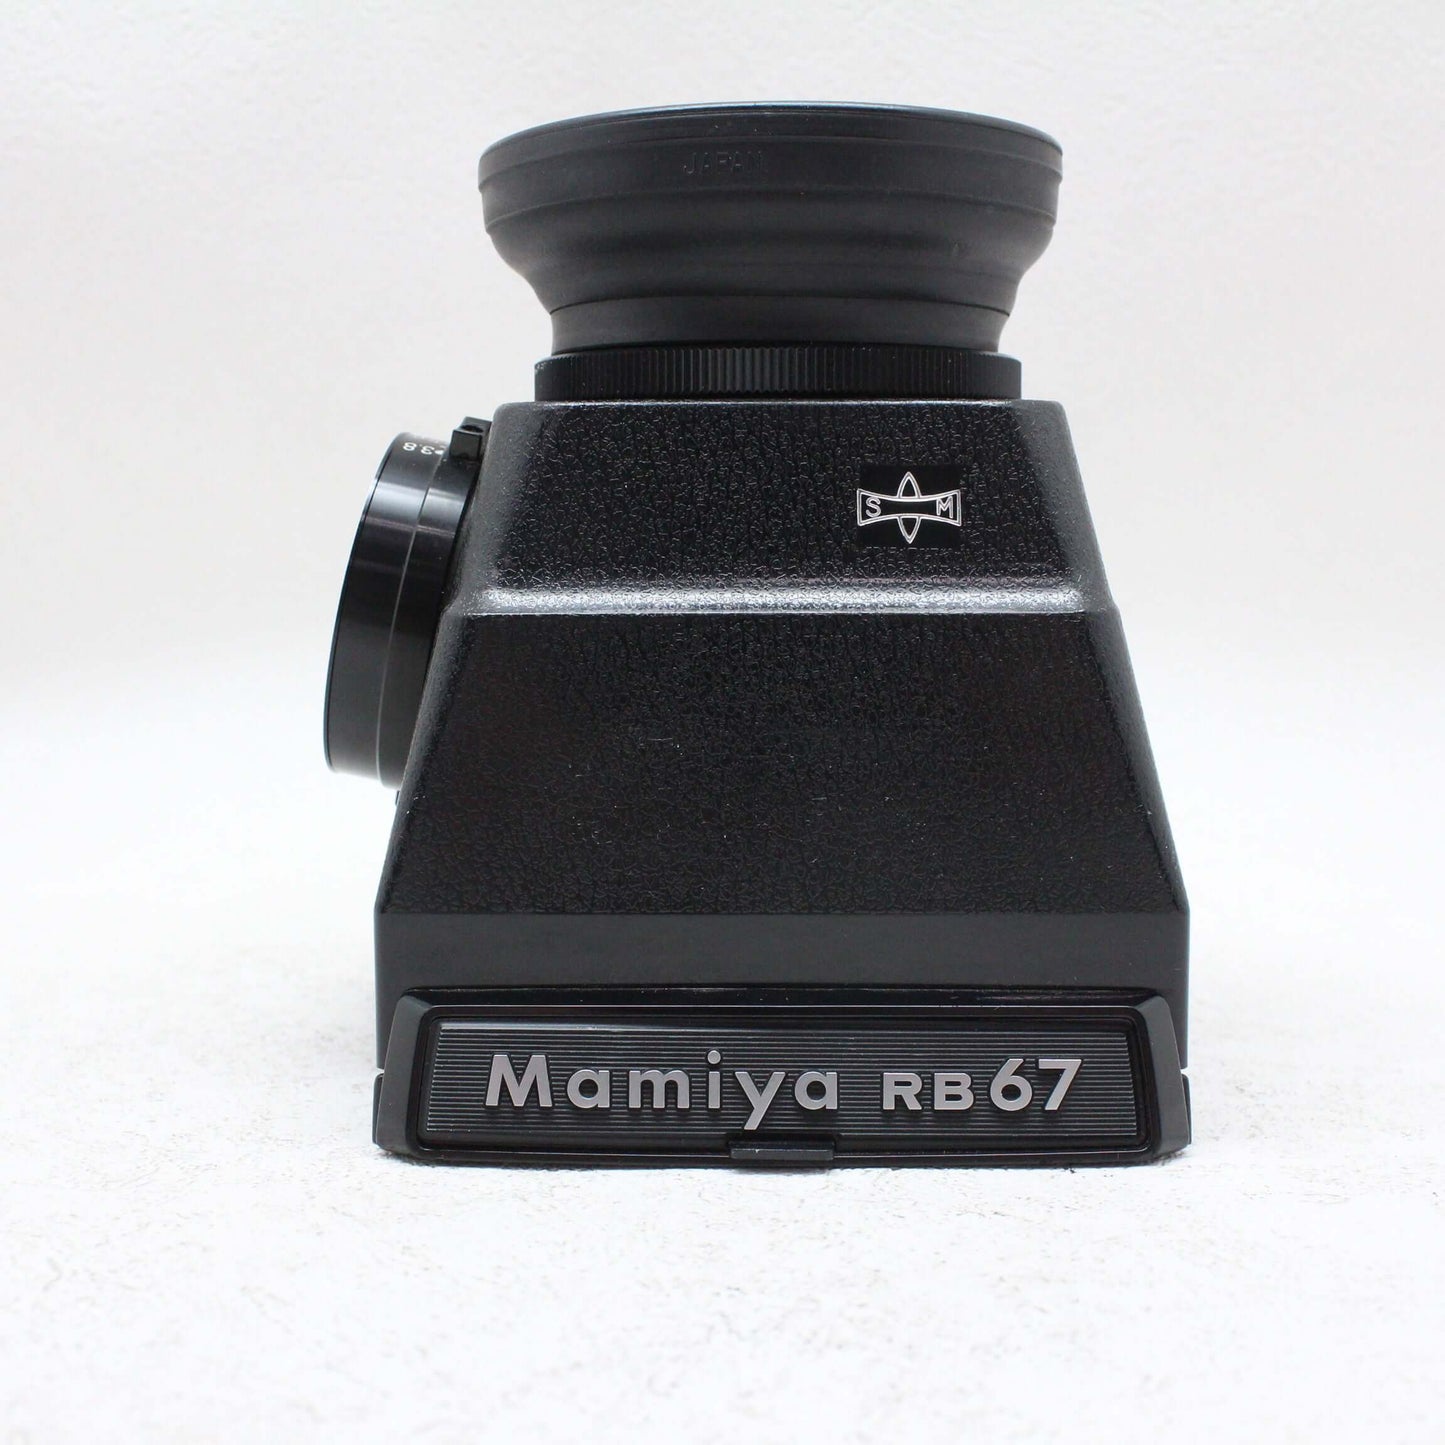 中古品 MAMIYA RB67 PRO SD 127mm レンズキット【2月29日(木) youtube生配信でご紹介】